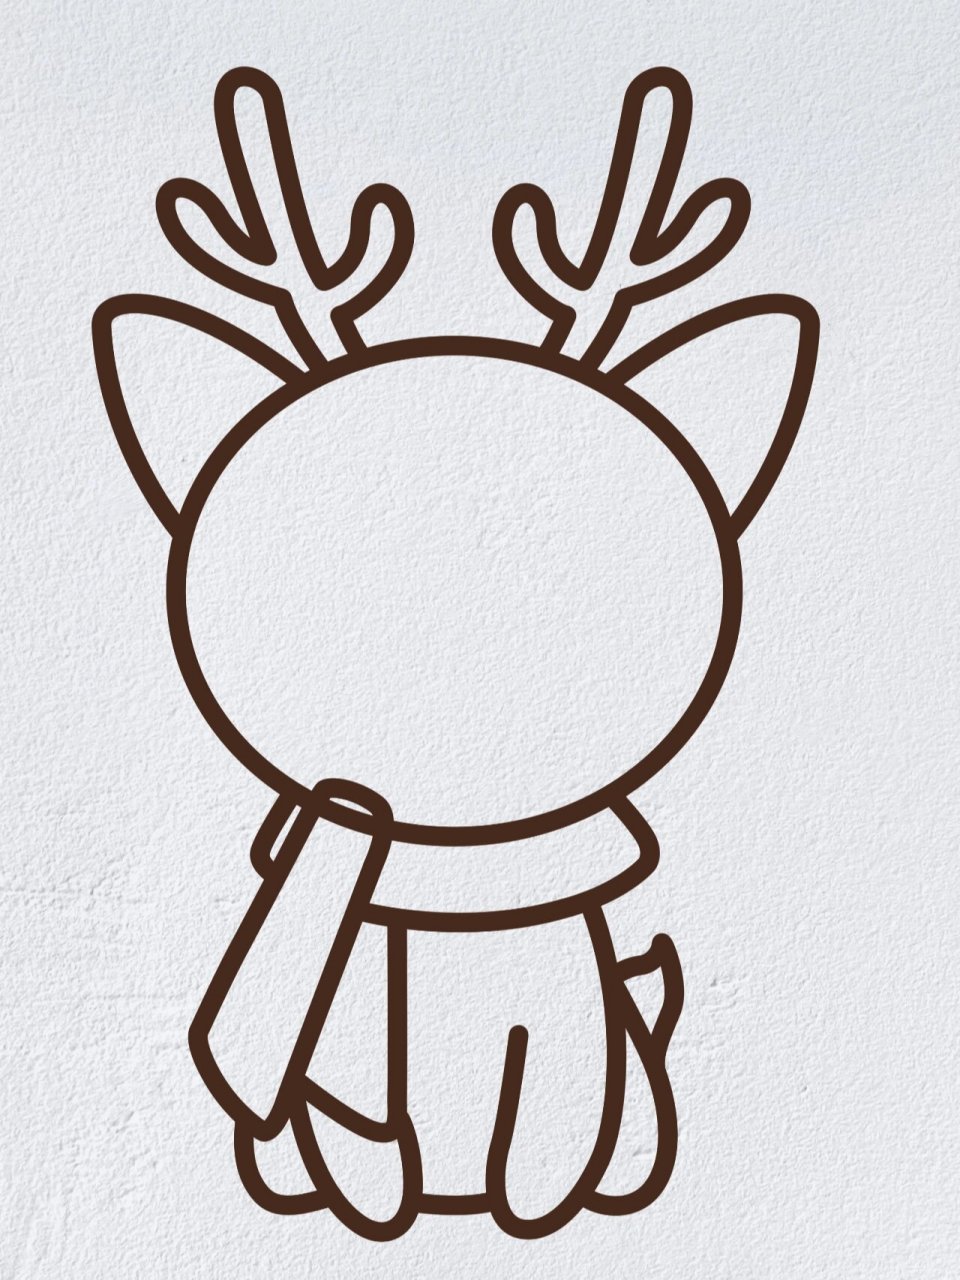 节日简笔画之圣诞节麋鹿(内附过程图)